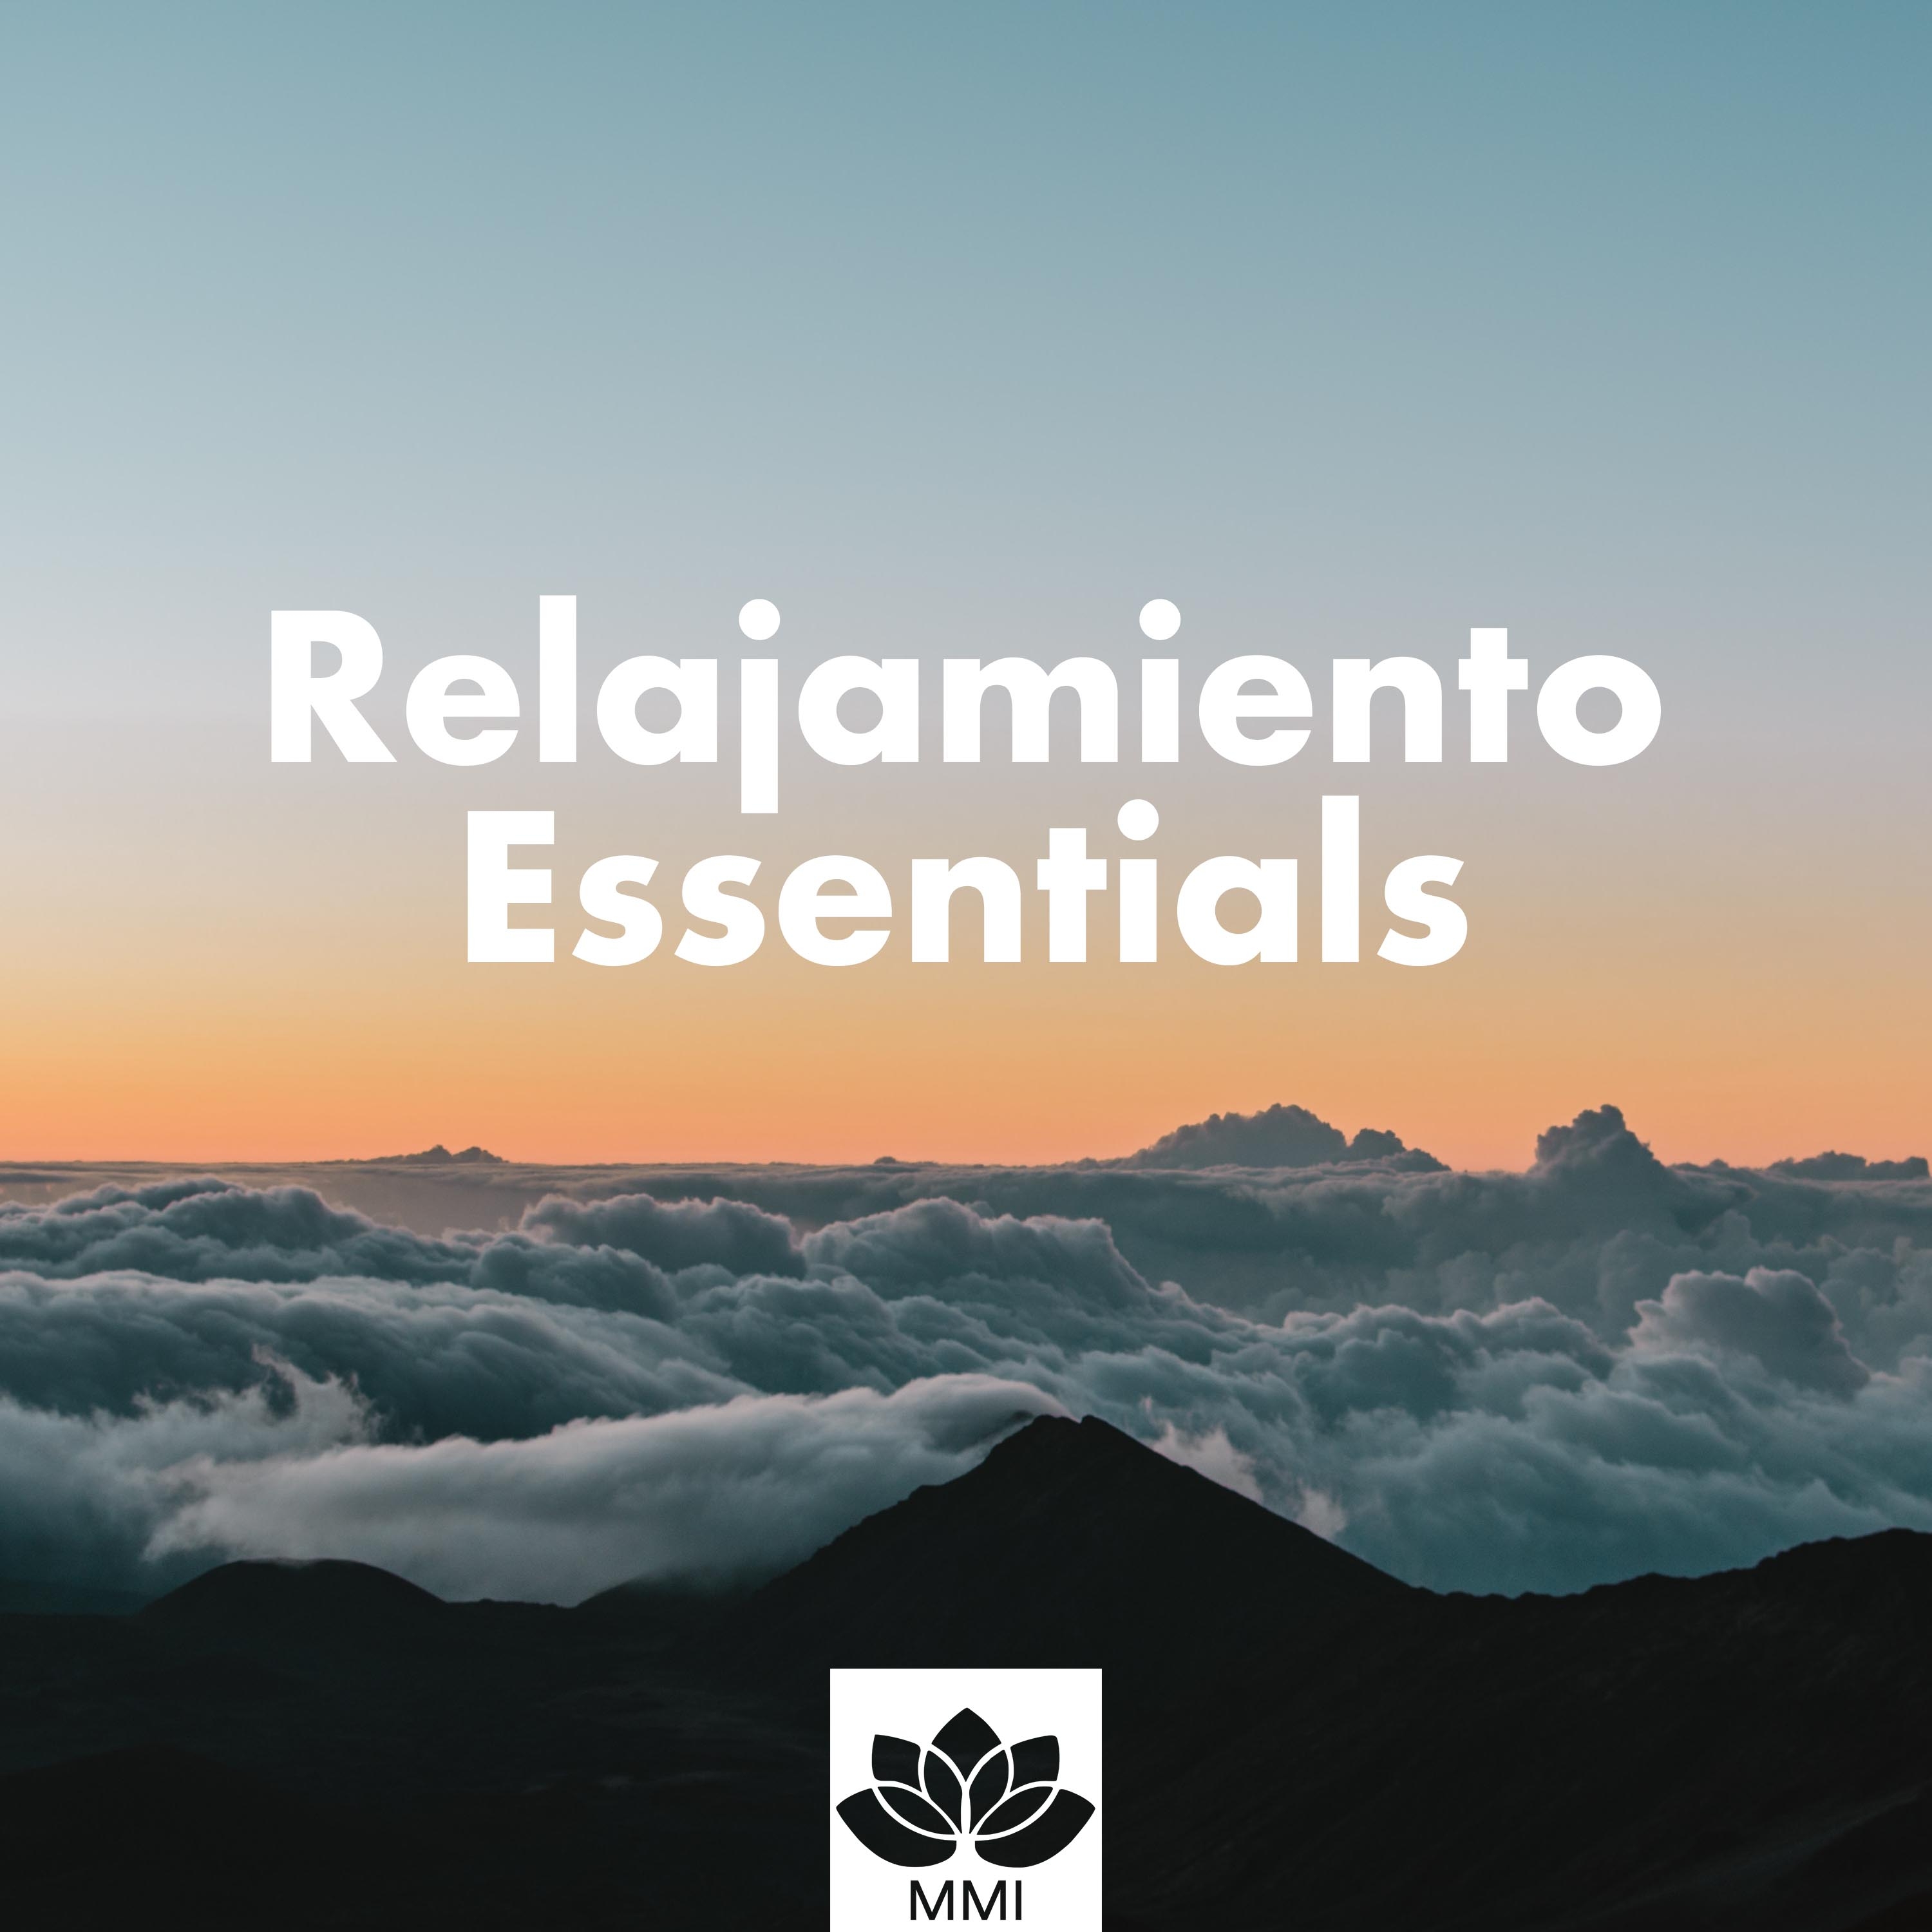 Relajamiento Essentials  Una Collecio n de las Mejores Canciones Relajantes para Restaurantes, Hoteles, Spa y Centros de Bienestar